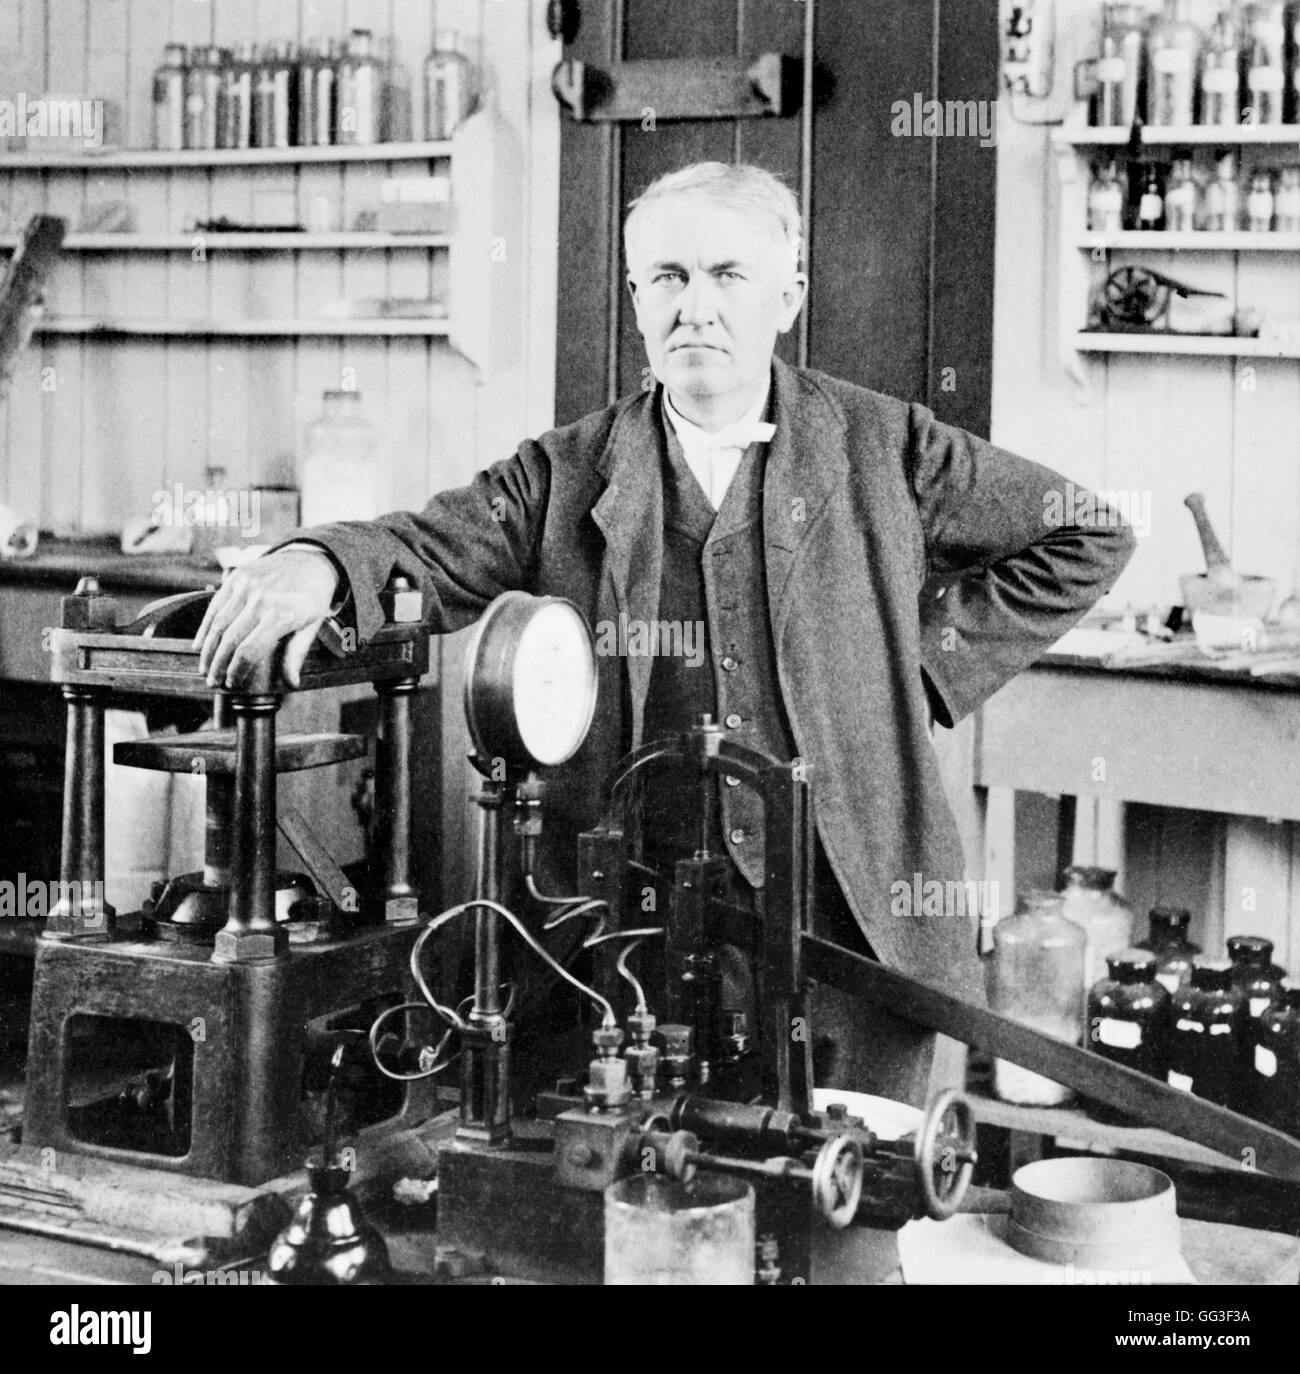 US-amerikanischer Erfinder und Unternehmer, Thomas Edison (1847-1931), in seinem Labor in East Orange, NJ, USA. Porträt von Underwood und Underwood, c.1901. Stockfoto